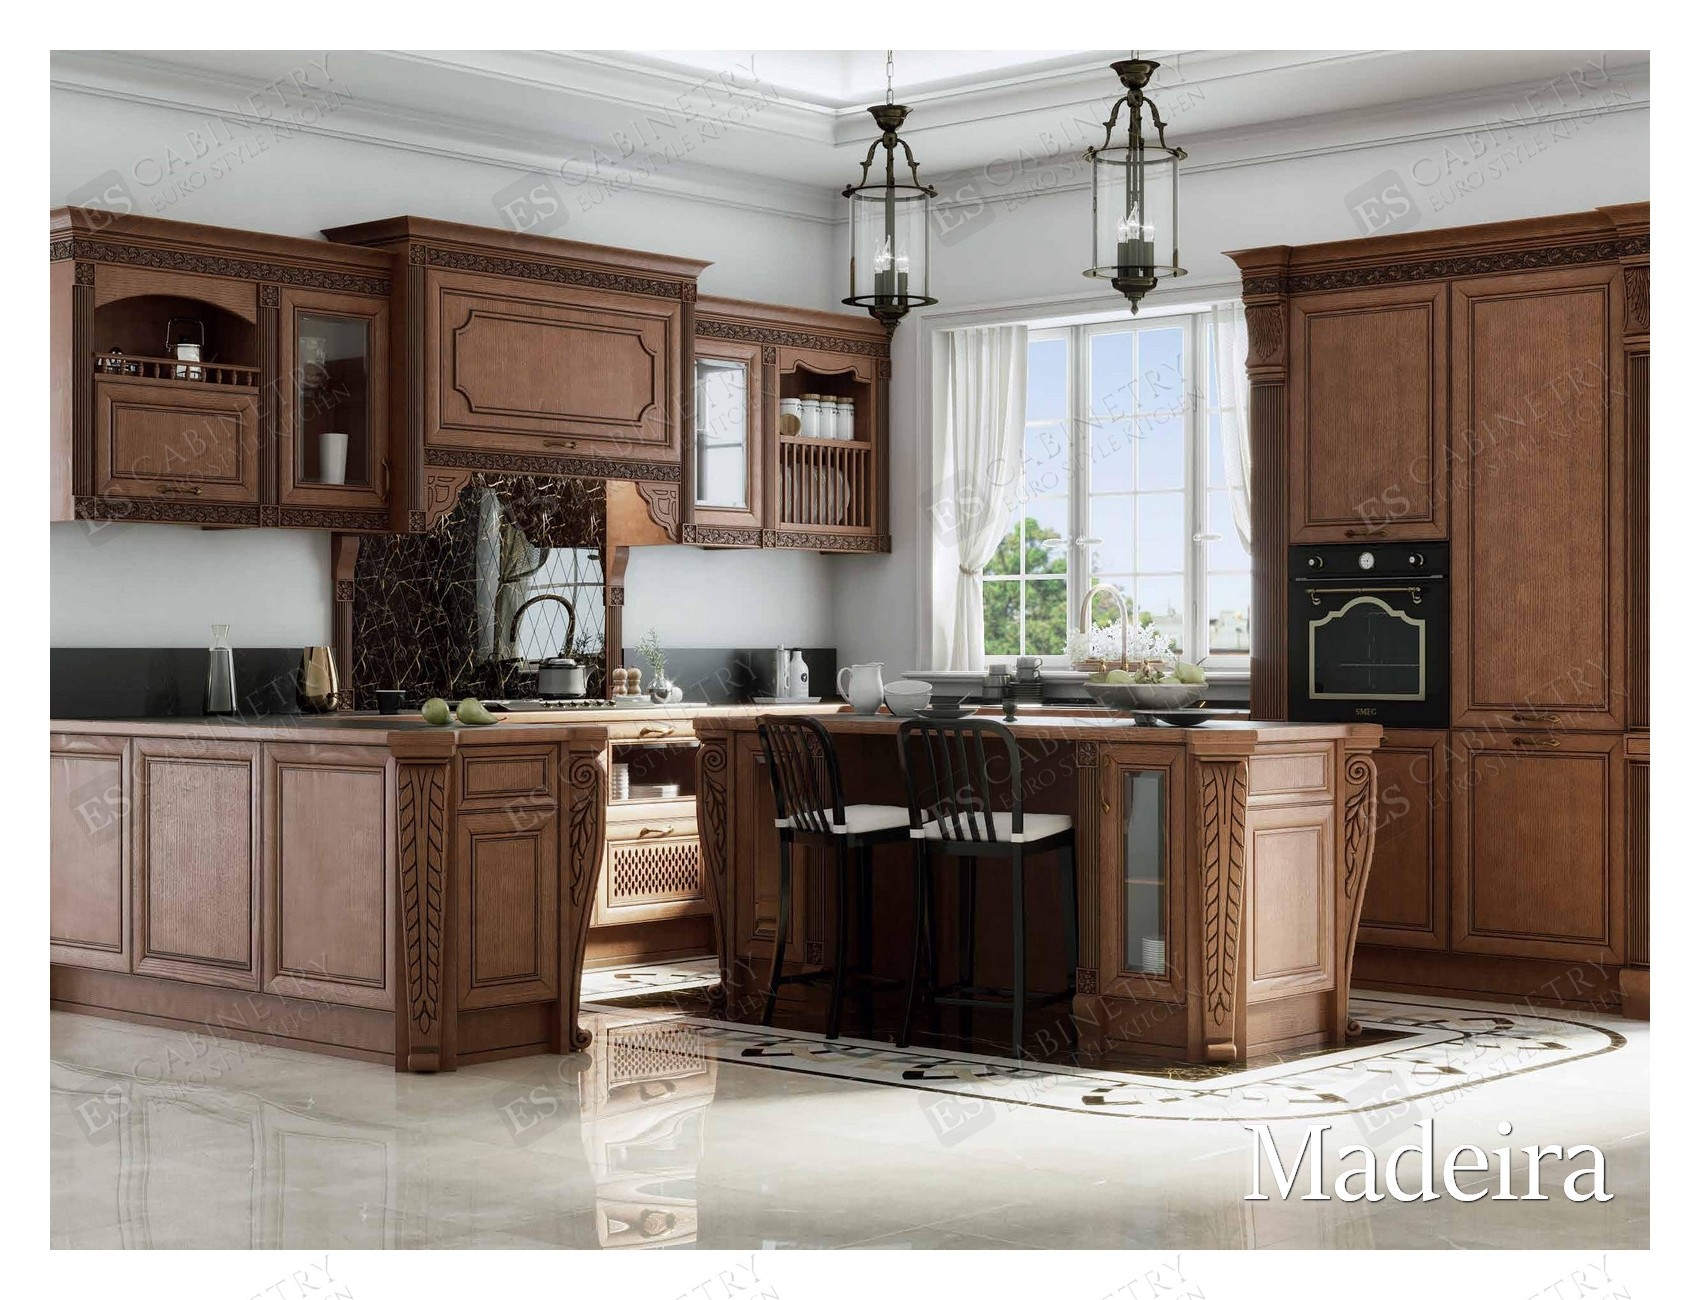 Madeira | Euro kitchen design